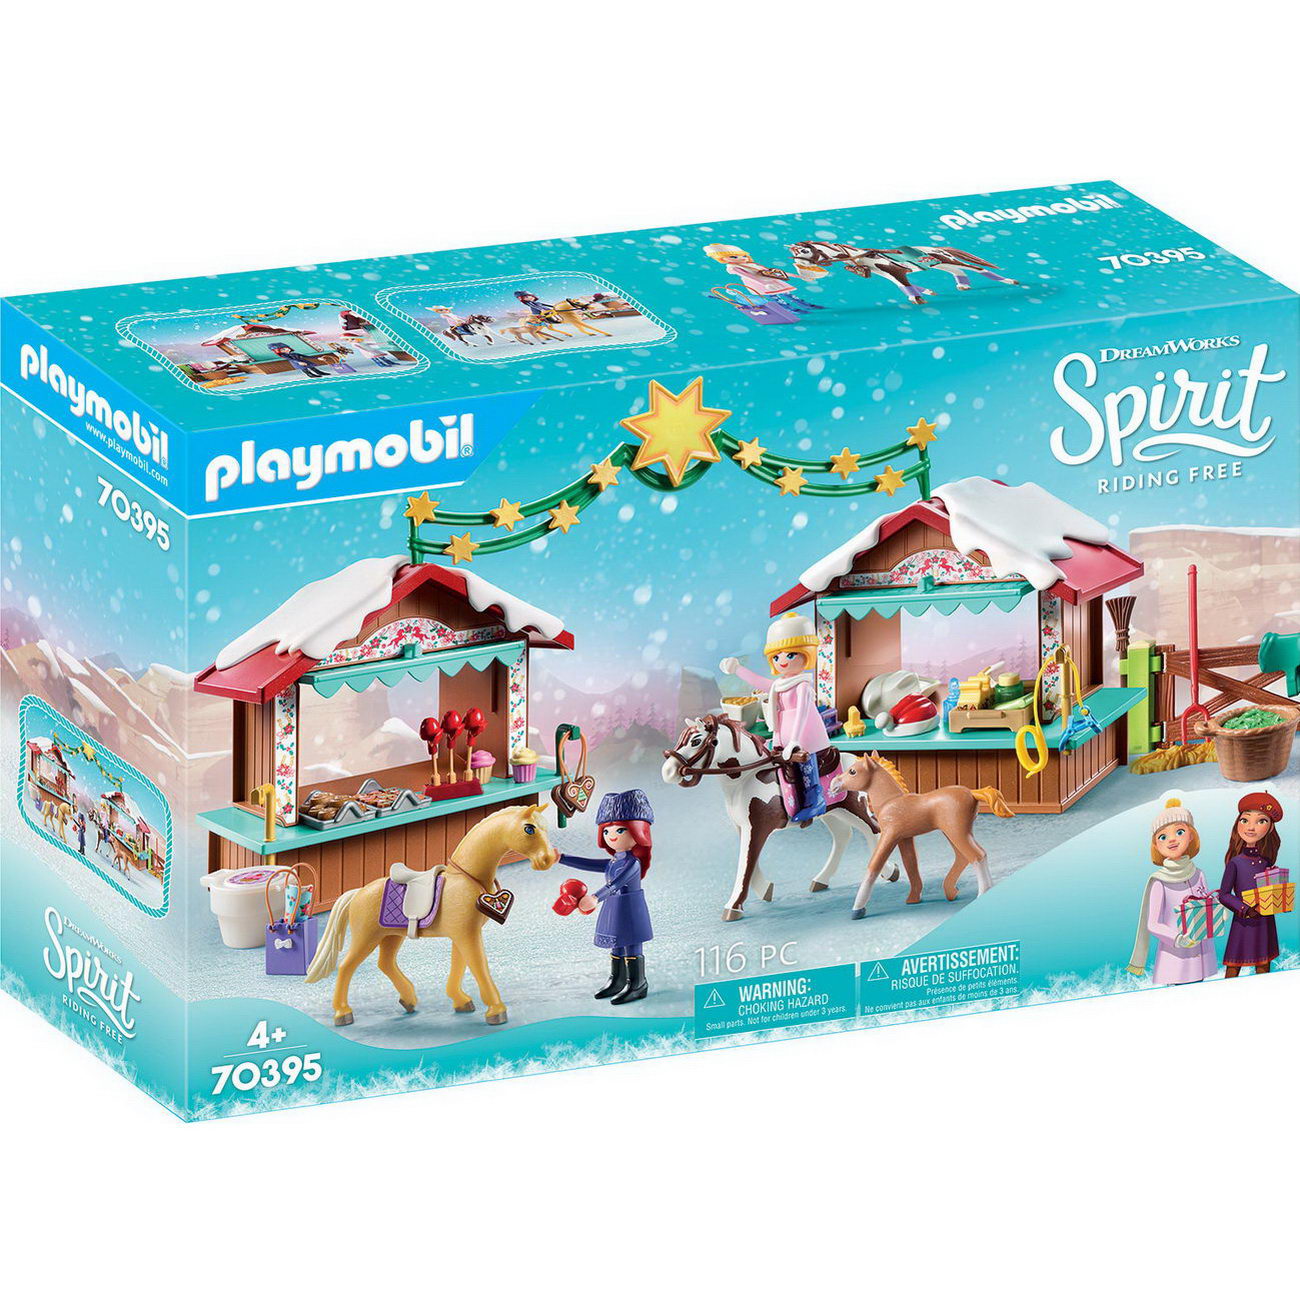 Playmobil 70395 - Weihnachten in Miradero - Spirit - Riding Free